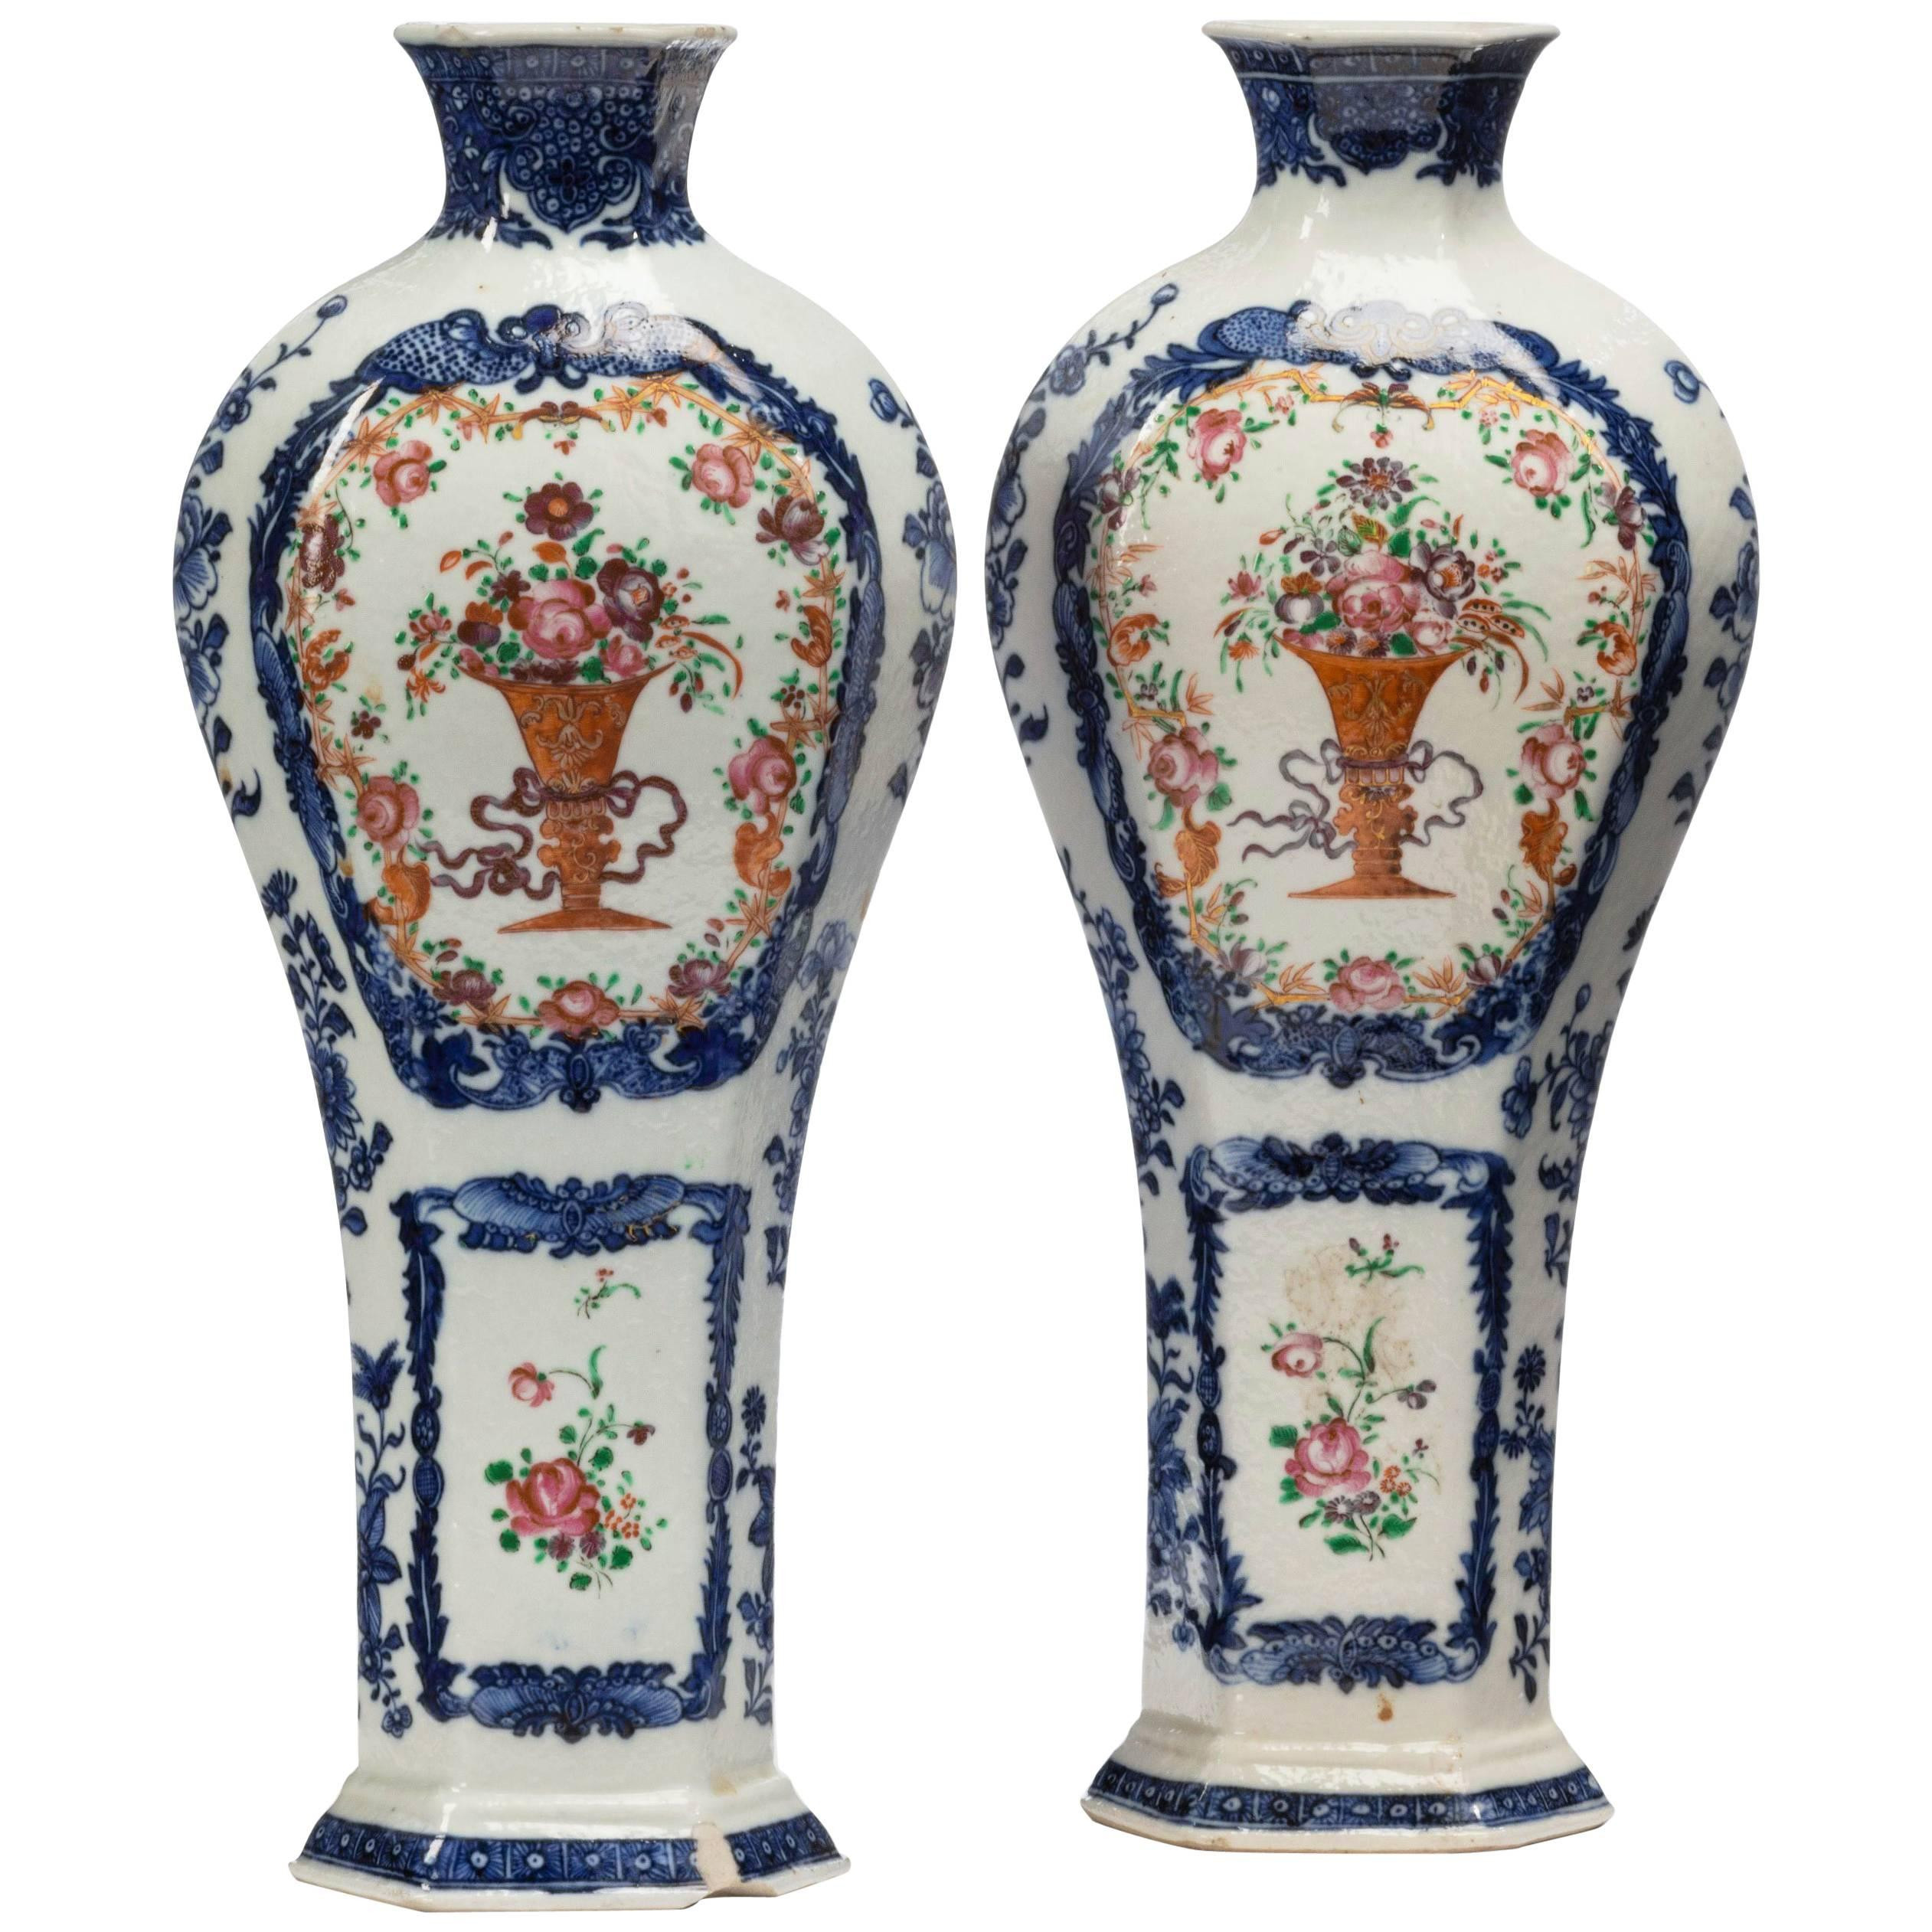 19 Unique Blue White Porcelain Vase 2023 free download blue white porcelain vase of pair of qianlong period vases for sale at 1stdibs in 10738003 master